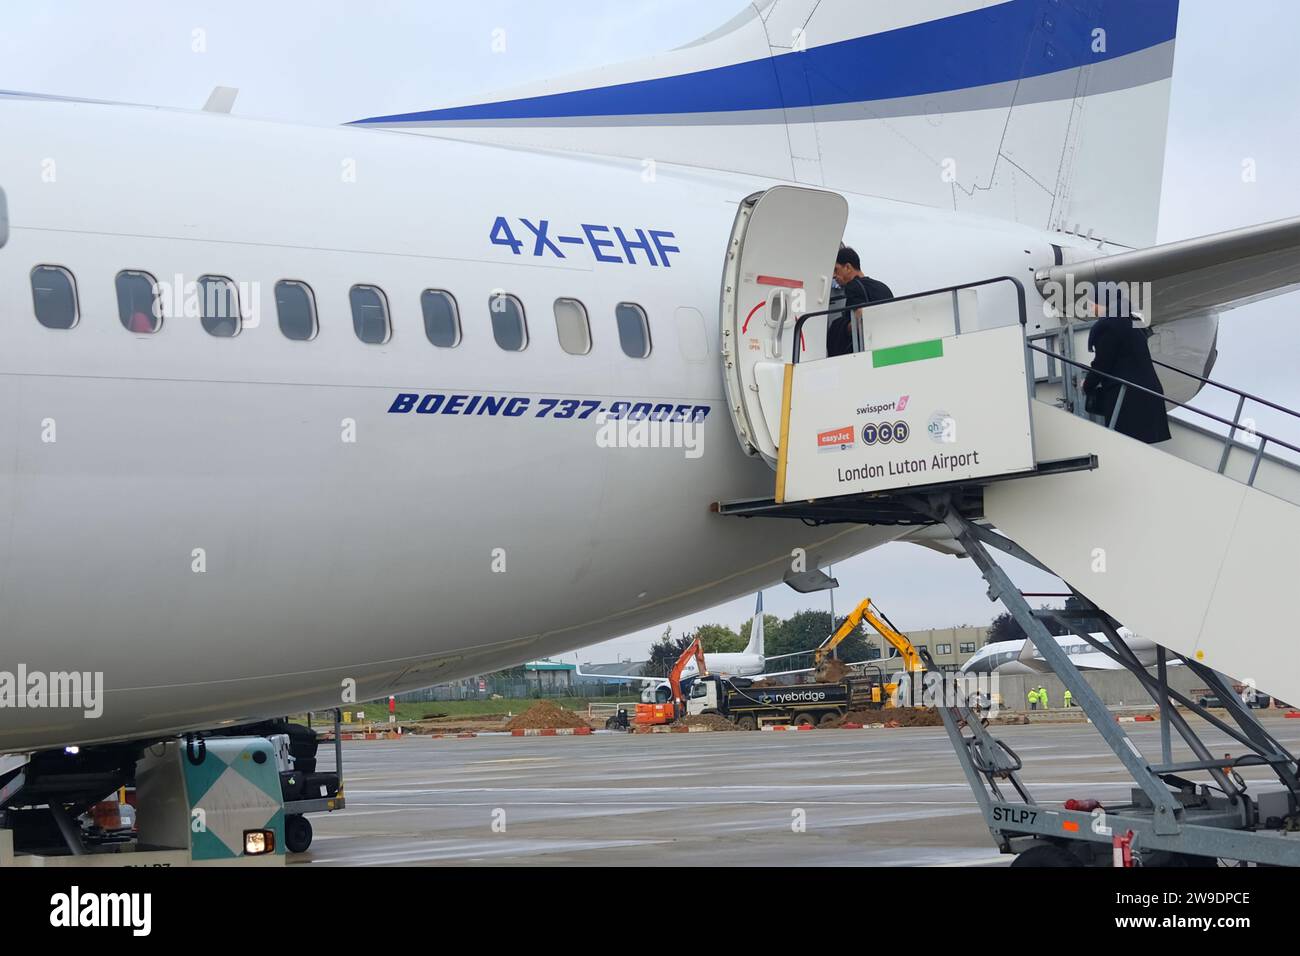 Vue latérale de l'arrière d'un Boeing 737 900ER d'El Al immatriculé 4X-EHF assis sur le Tarmac à l'aéroport de Luton avant le départ pour tel Aviv, Israël Banque D'Images